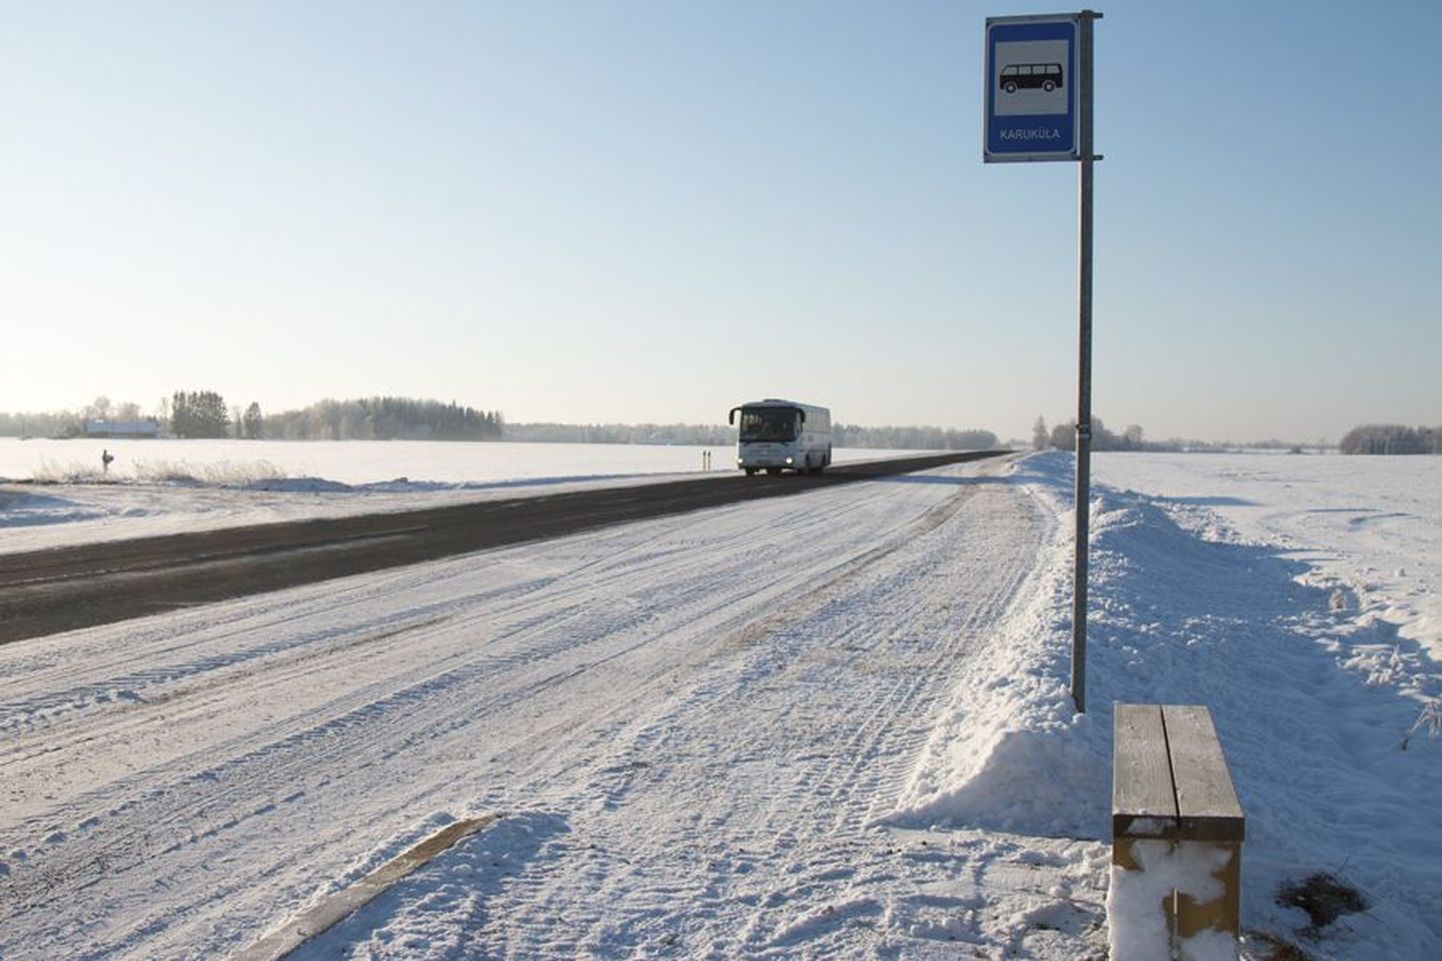 Nii nagu paljudel teistel Viljandimaa omavalitsustel soovitas kohanimenõukogu ka Halliste vallal mõne bussipeatuse nime muuta. Tootsi külas asuva Karuküla bussipeatuse nimi jäeti siiski samaks, sest just see on rahva mällu talletunud.